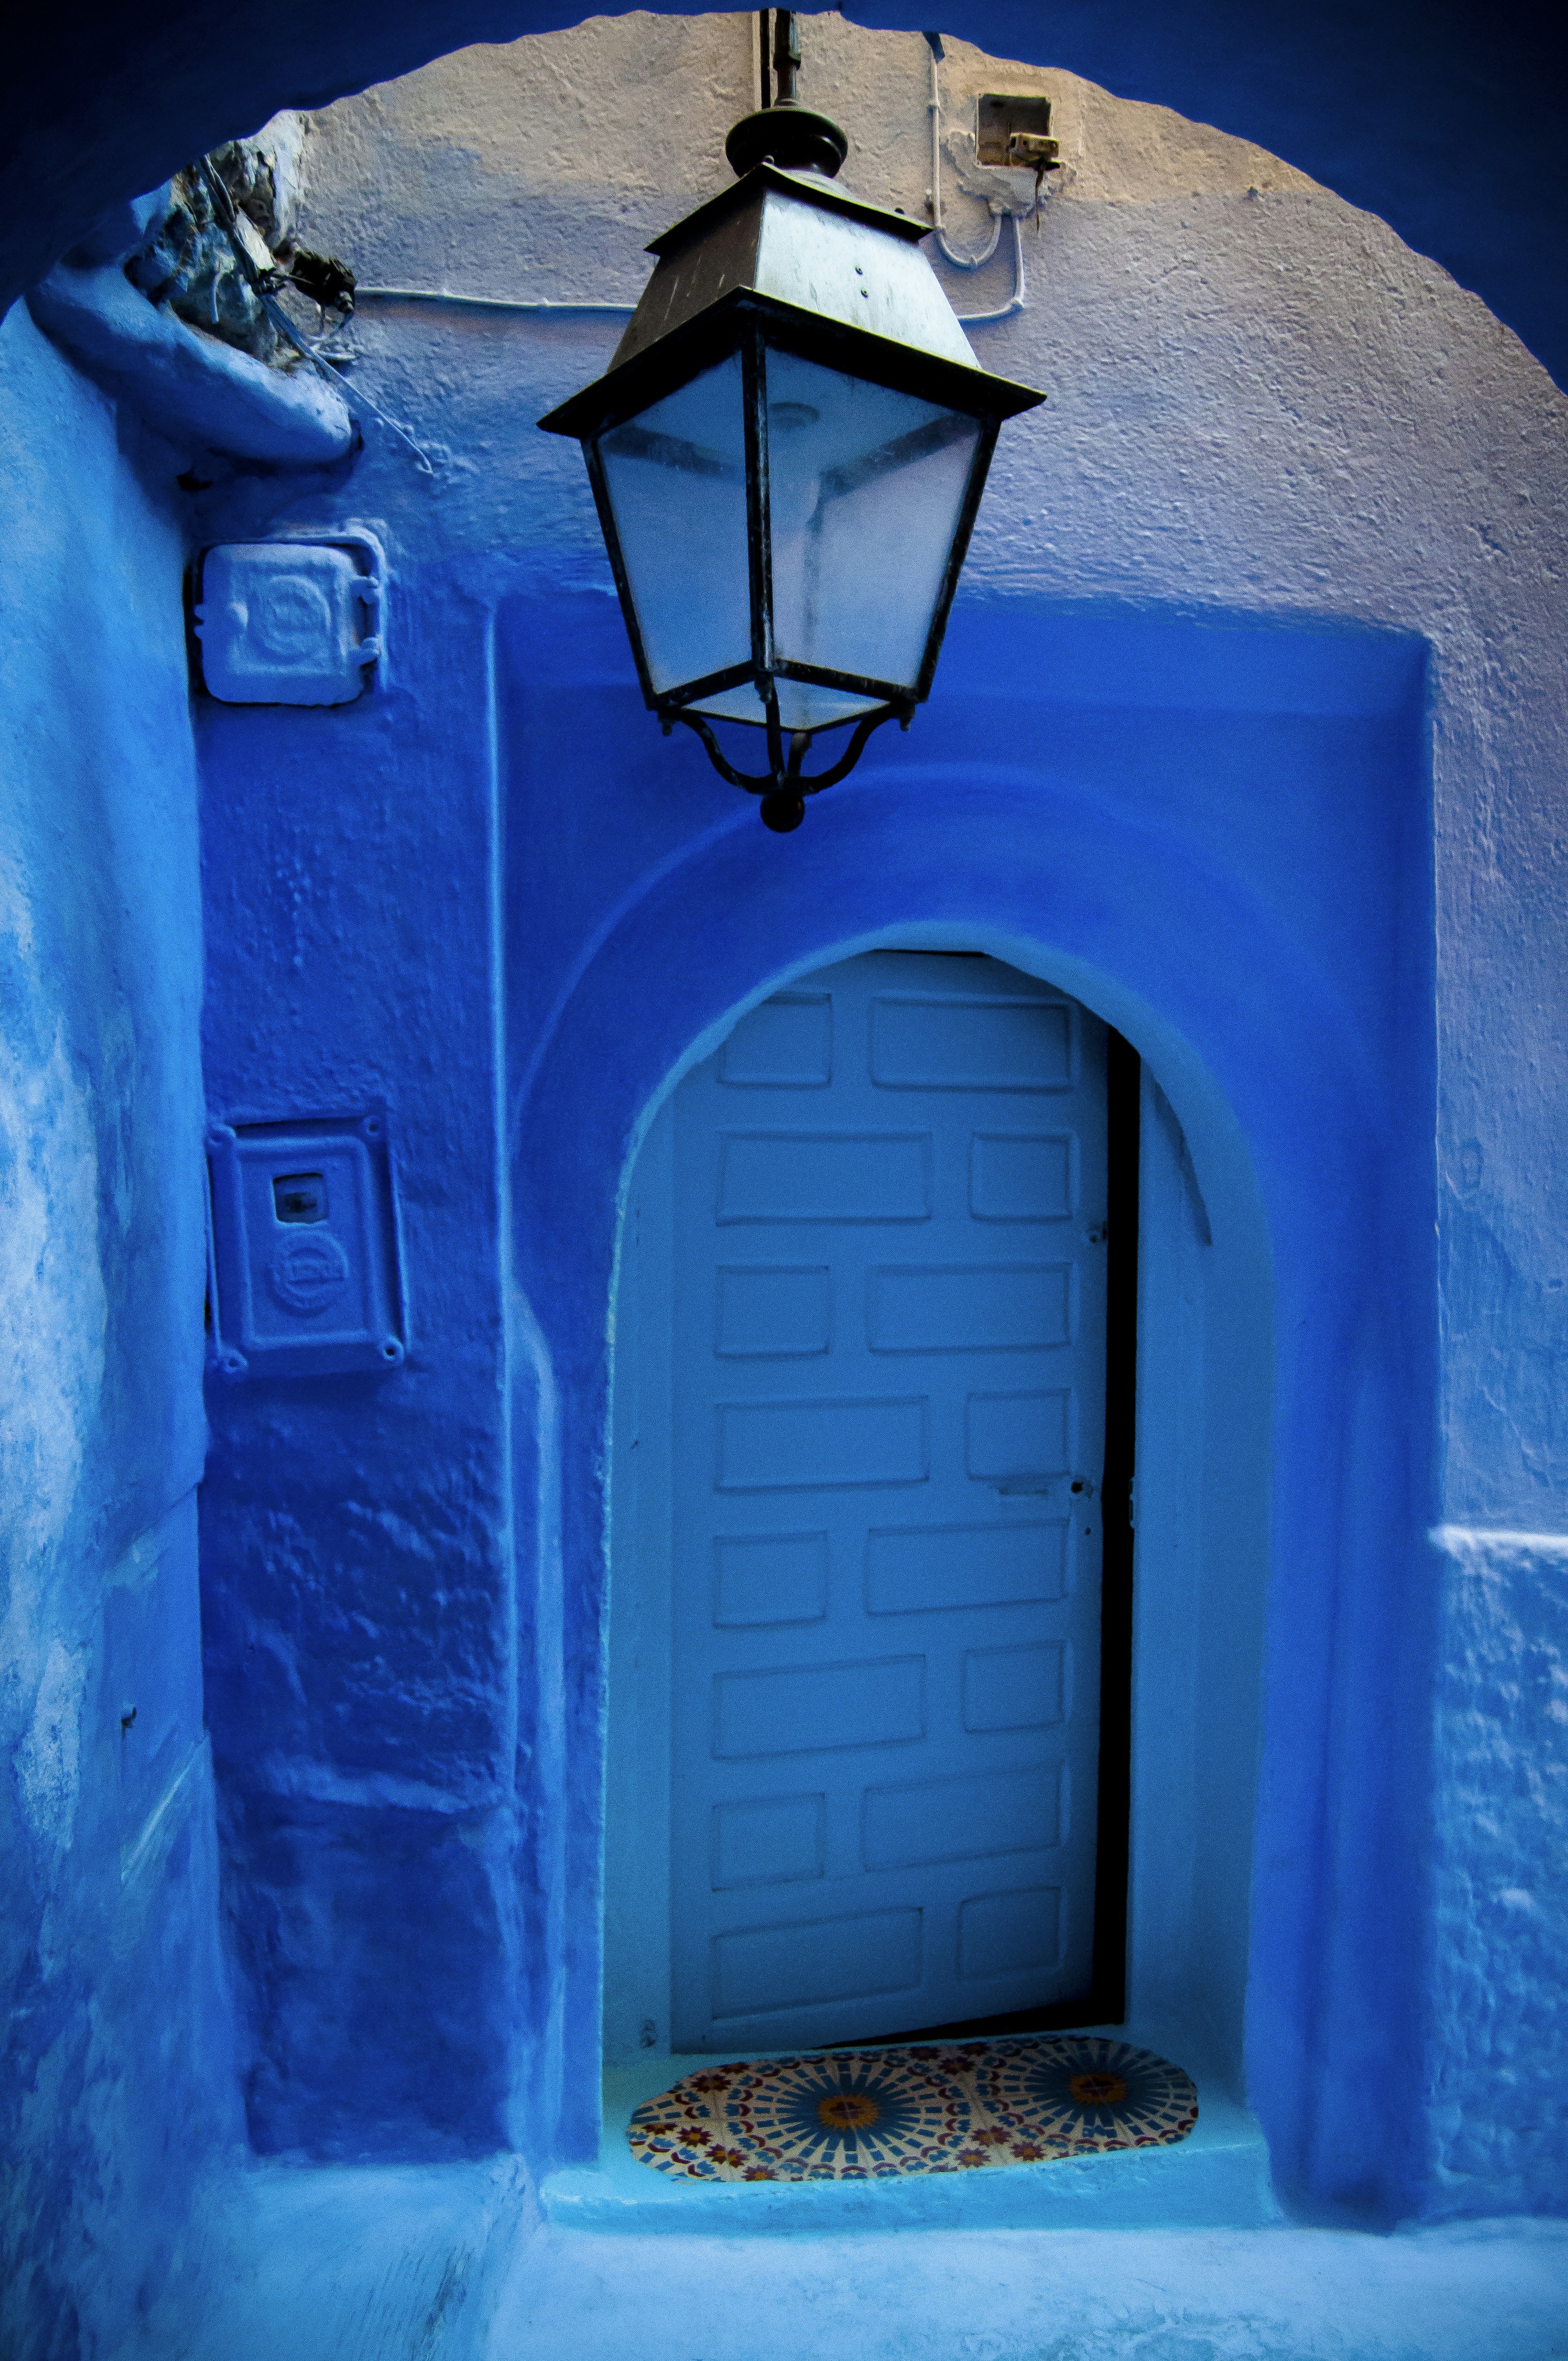 Blue door in Chefchaouen's Medina, Morocco.